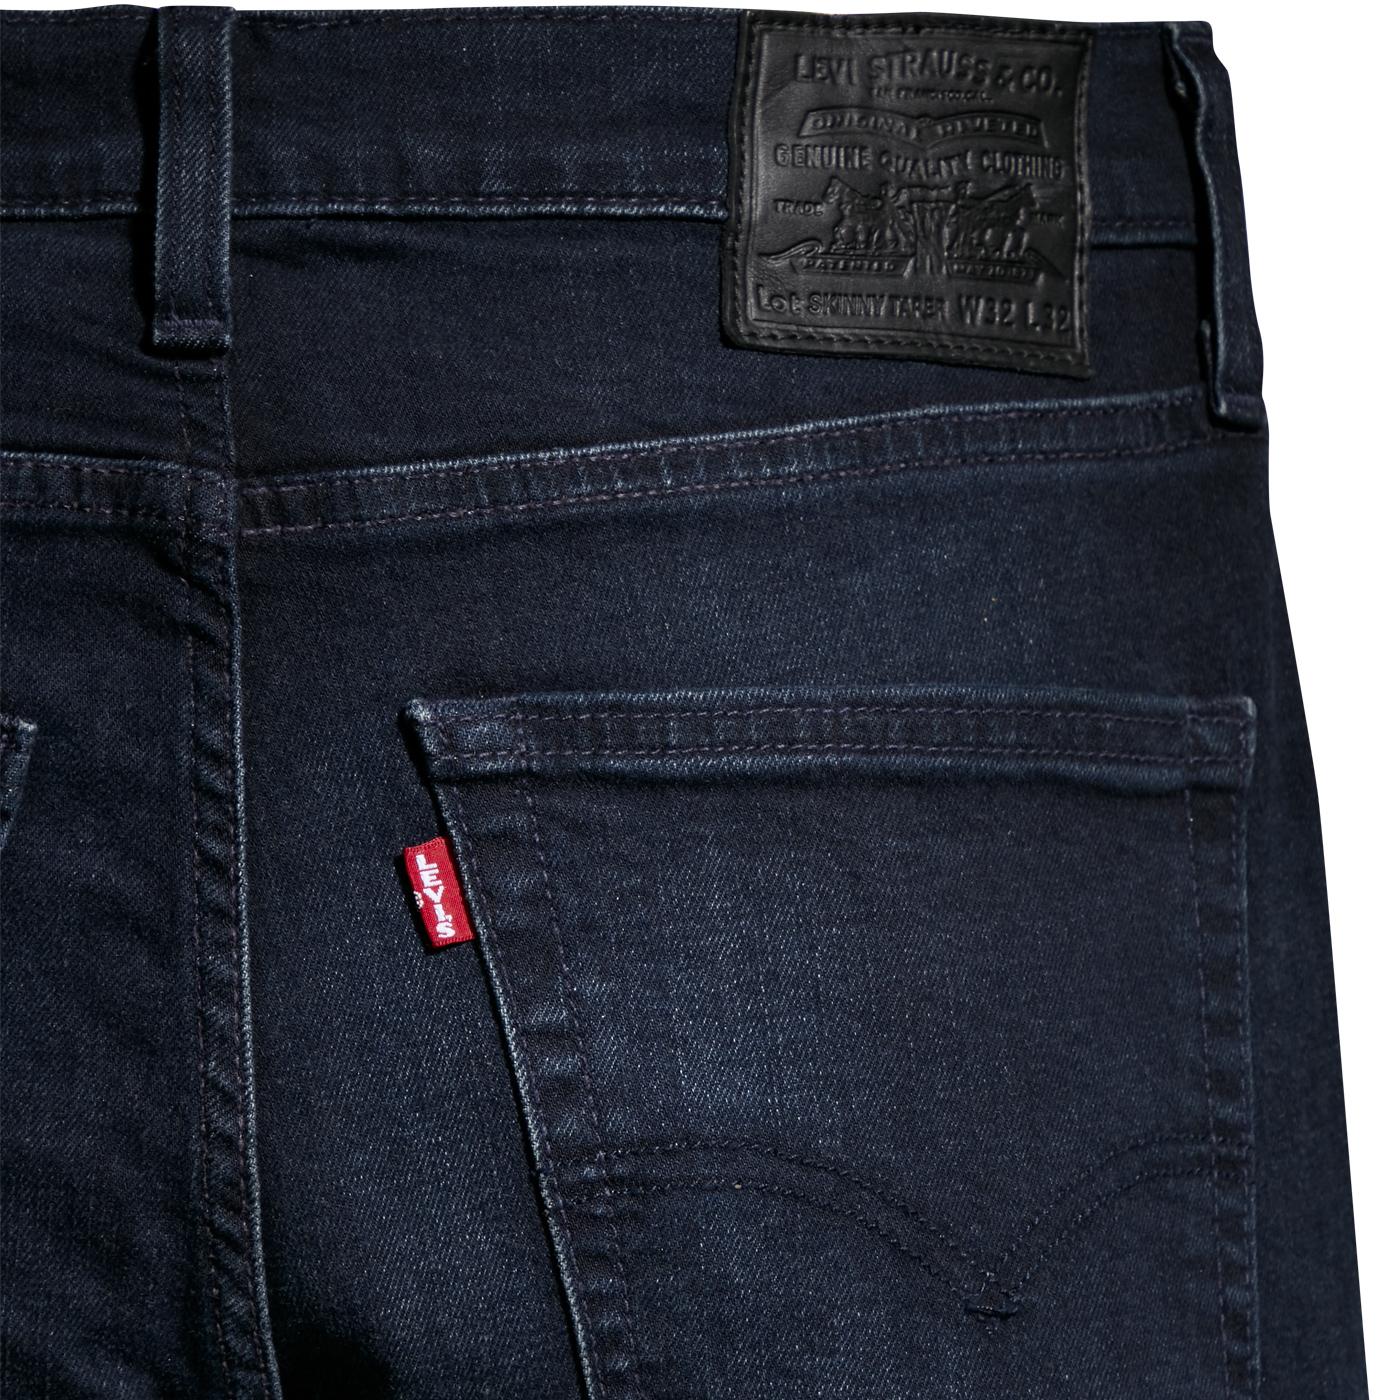 LEVI'S Skinny Taper Men's Mod Jeans in Blue Ridge Adv